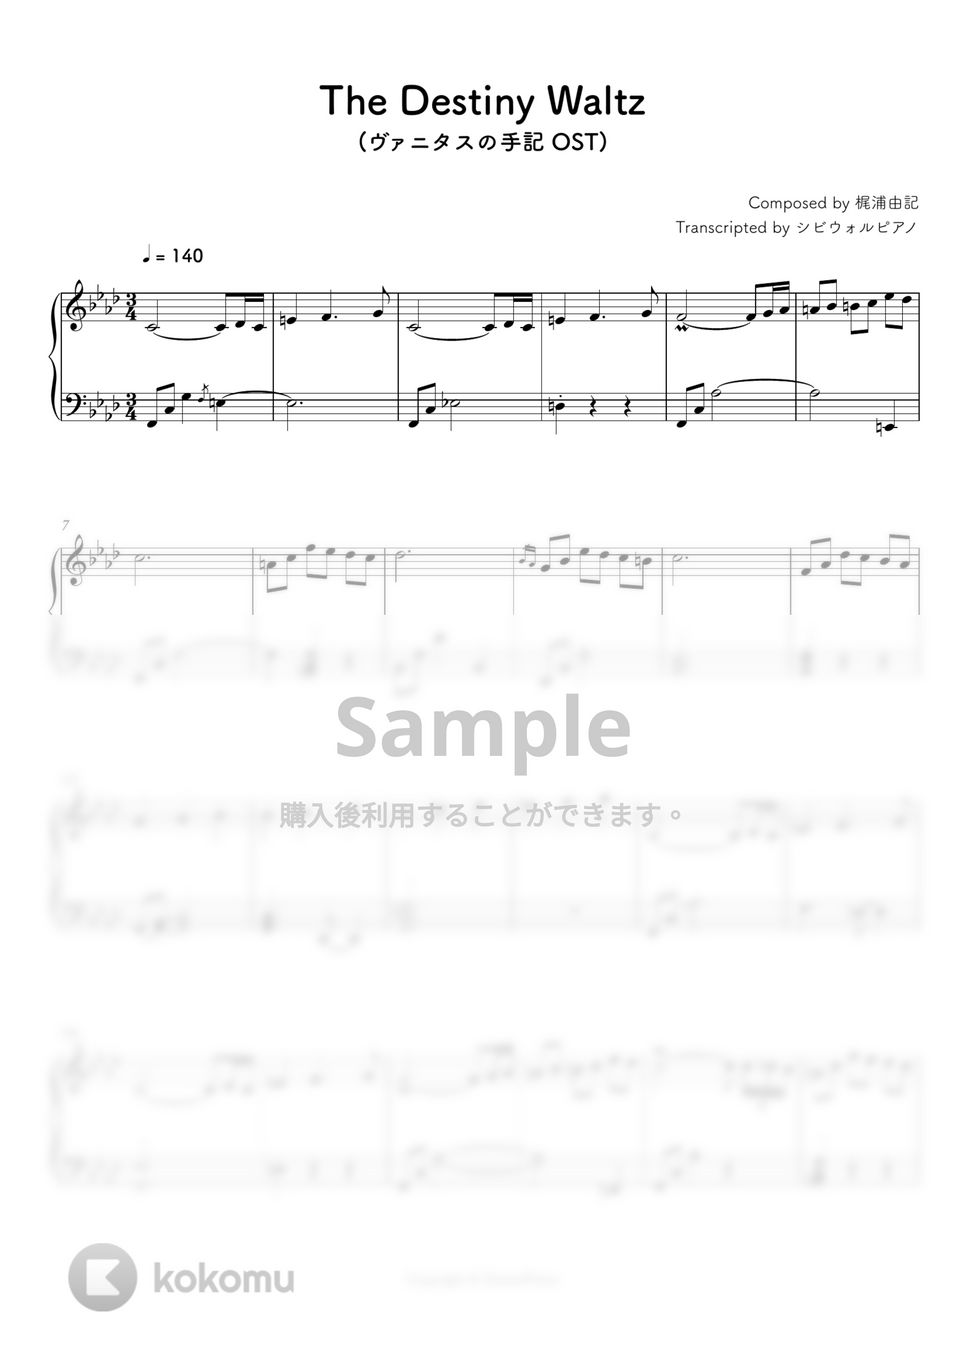 ヴァニタスの手記 - The Destiny Waltz by シビウォルピアノ